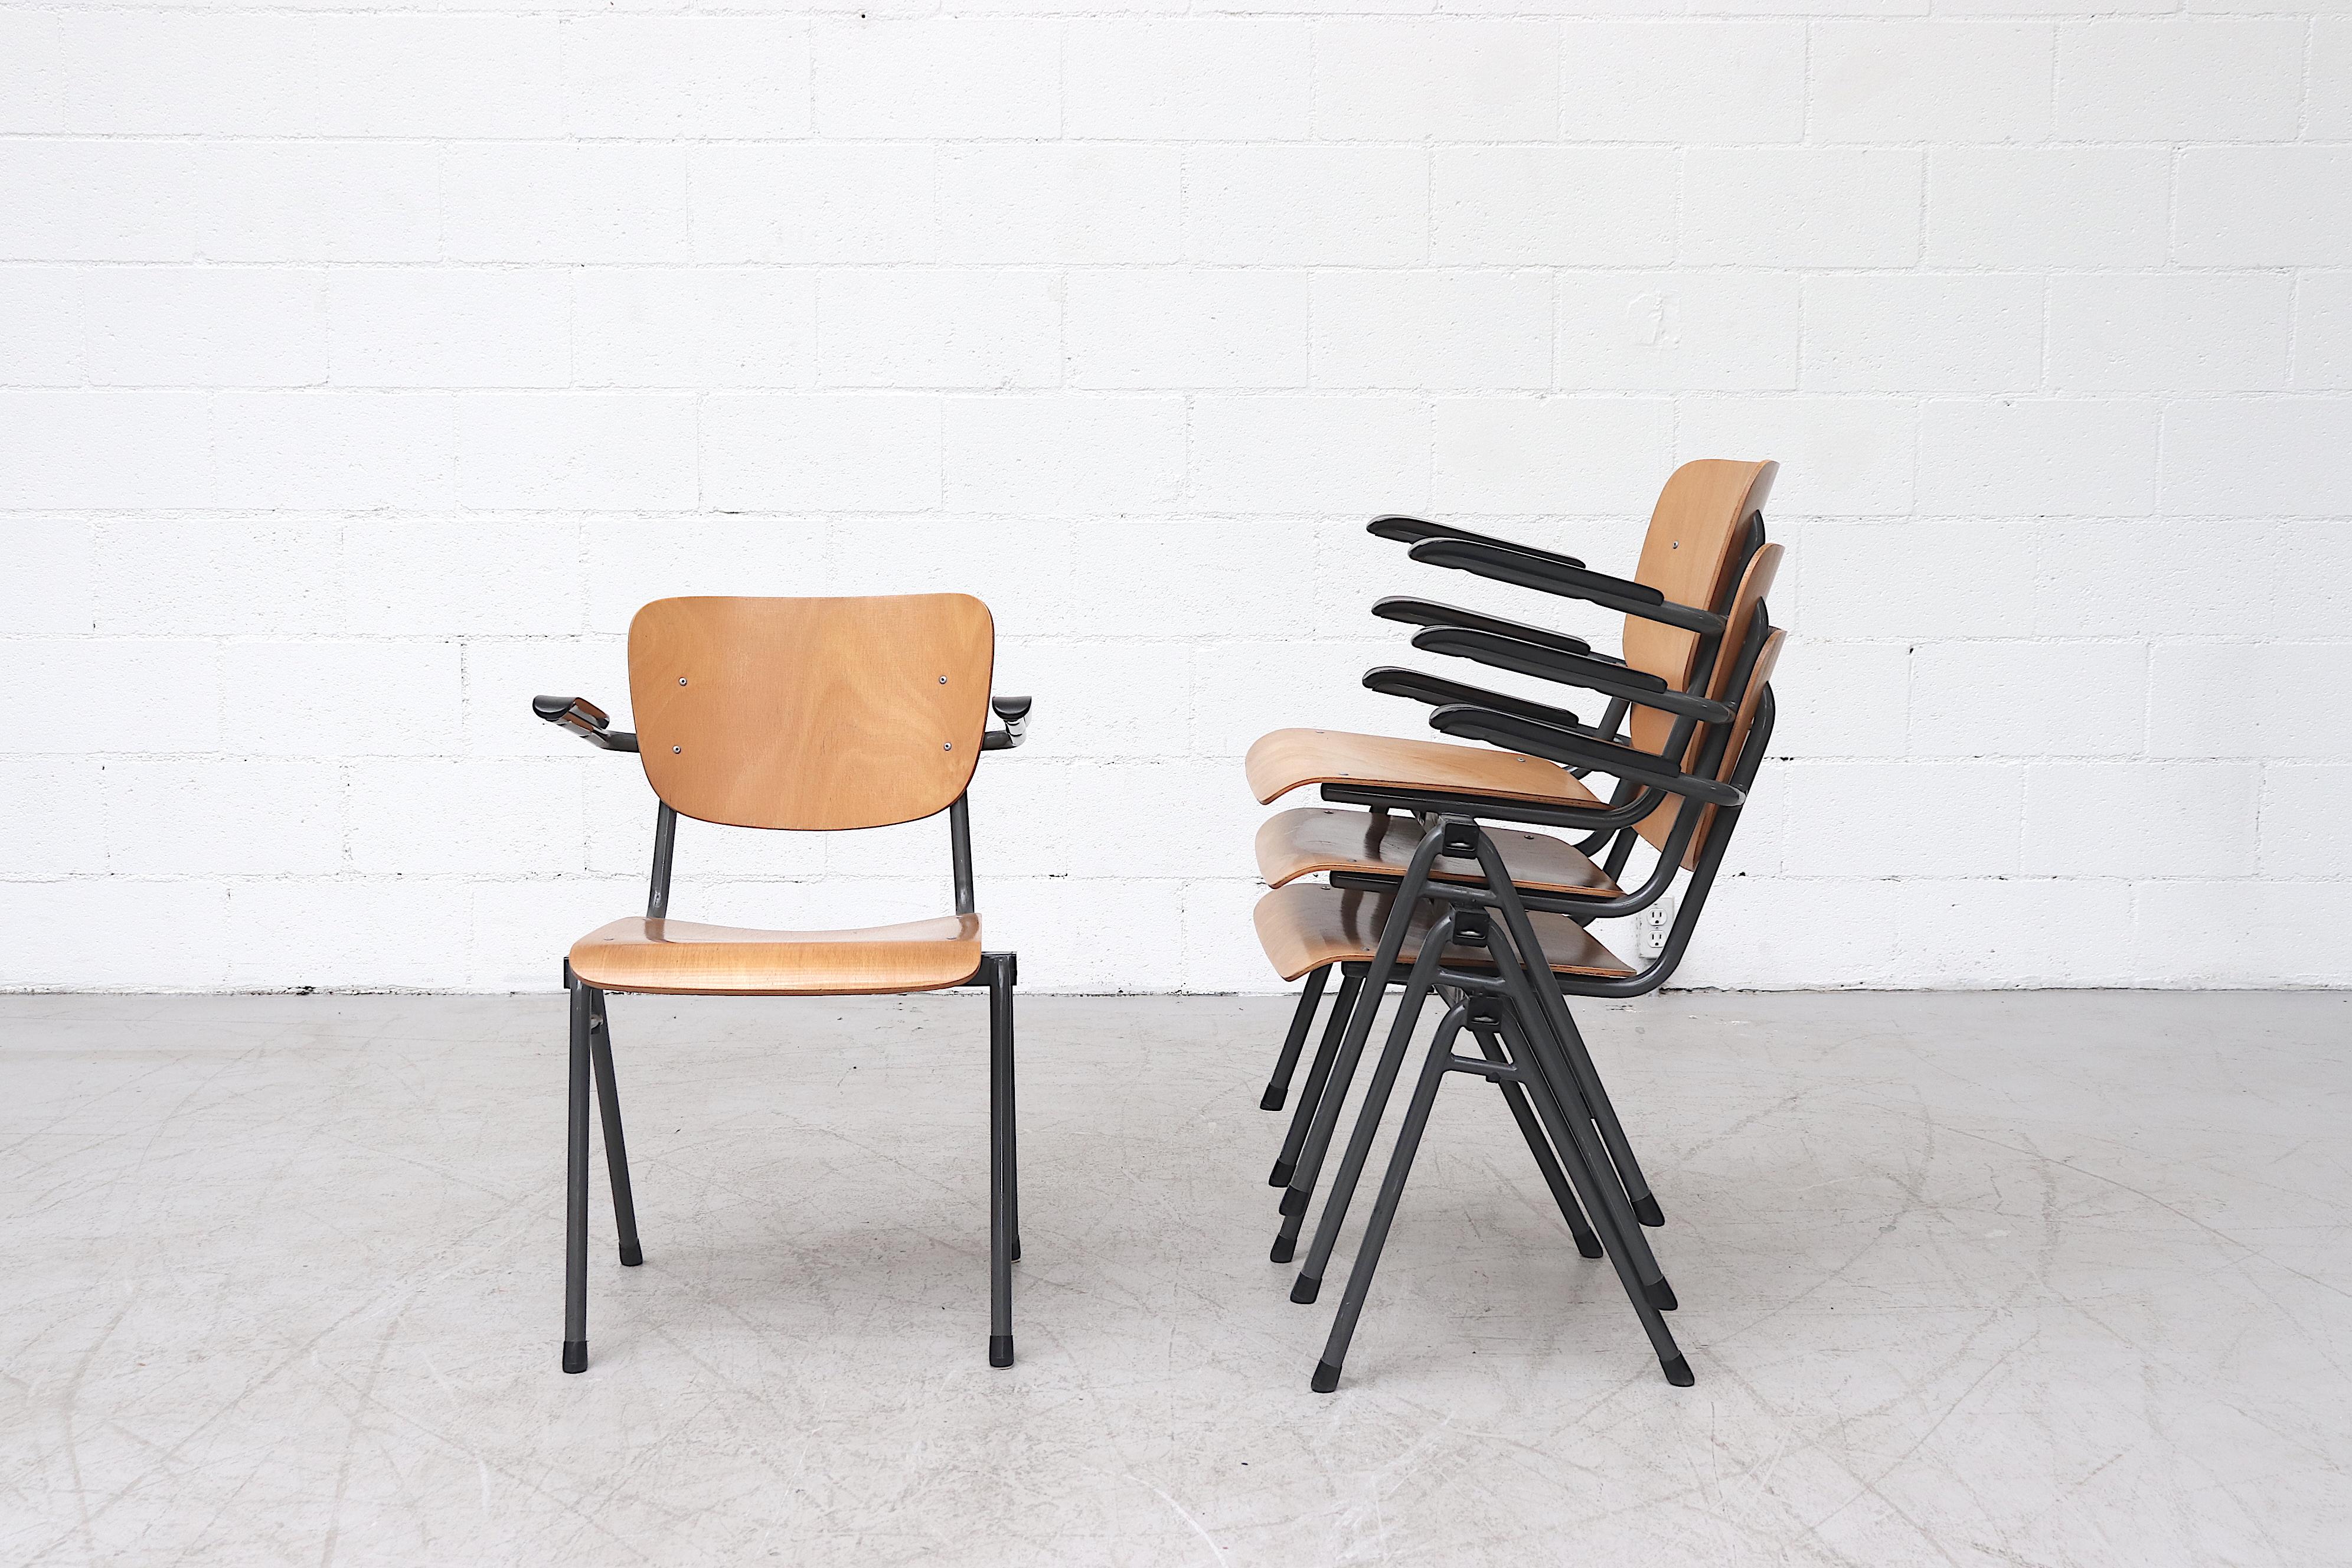 Deux ensembles de chaises d'école industrielles empilables avec accoudoirs en bakélite, armatures en métal émaillé gris et sièges en contreplaqué blond. En état d'origine avec quelques usures dues à l'âge et à l'utilisation. Prix fixe.